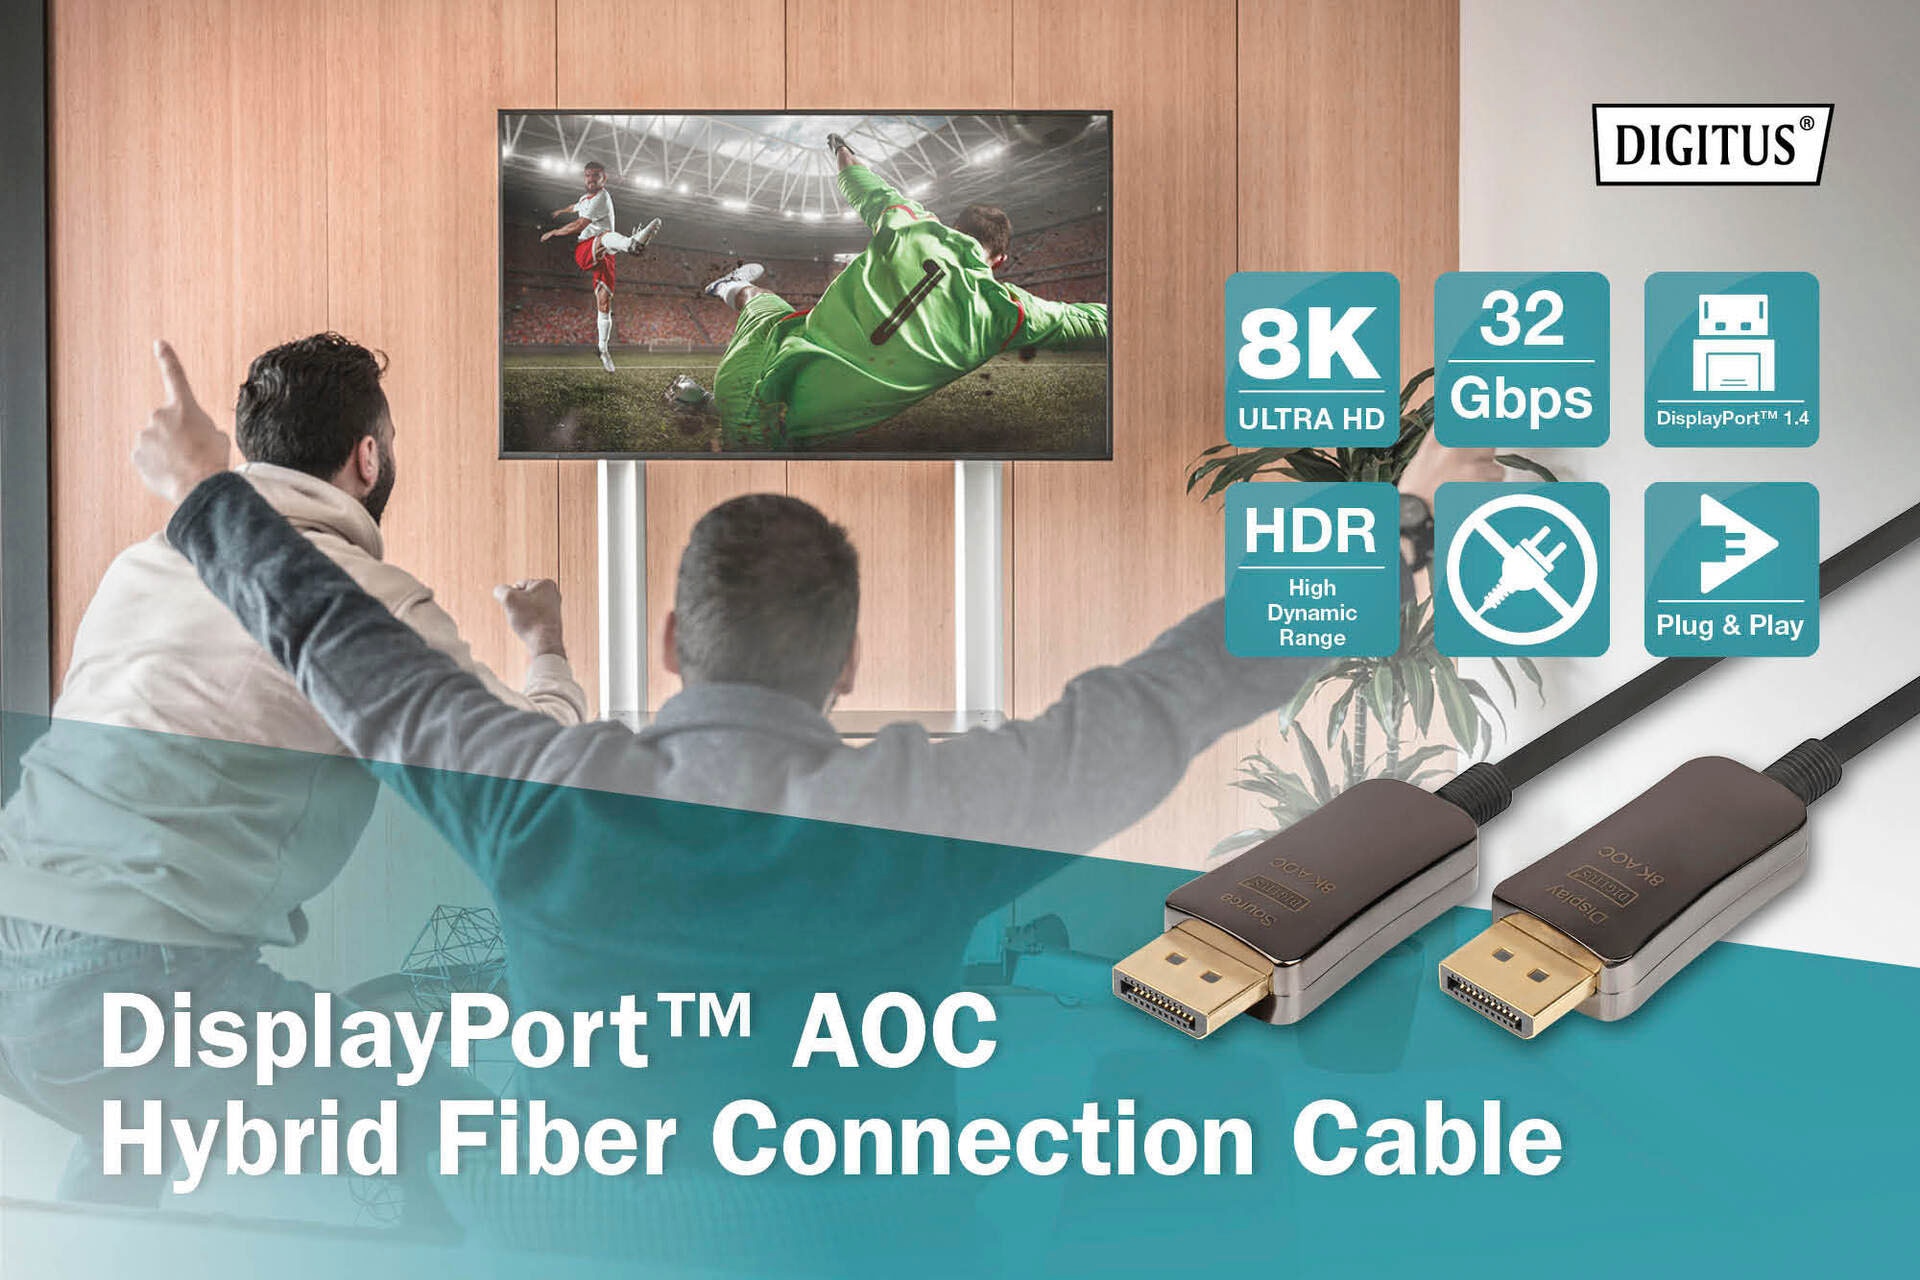 Glasfaserkabel, UHD AOC Digitus OTTO »DisplayPort™ 8K«, SAT-Kabel jetzt cm bei 1500 DisplayPort, Hybrid